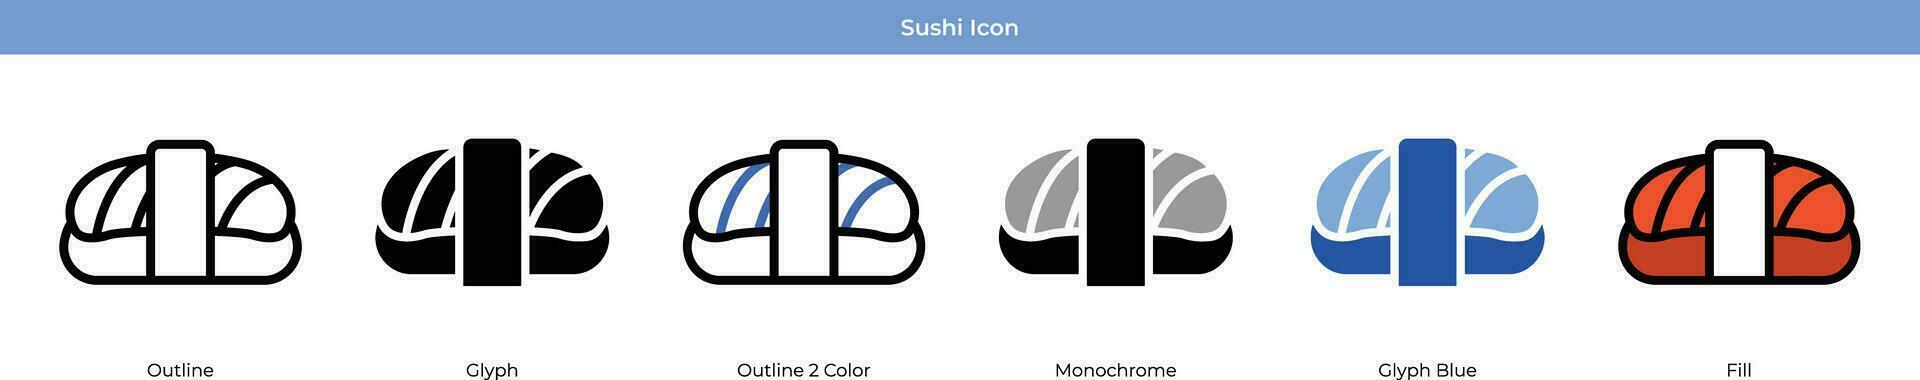 sushi uppsättning med 6 stil vektor